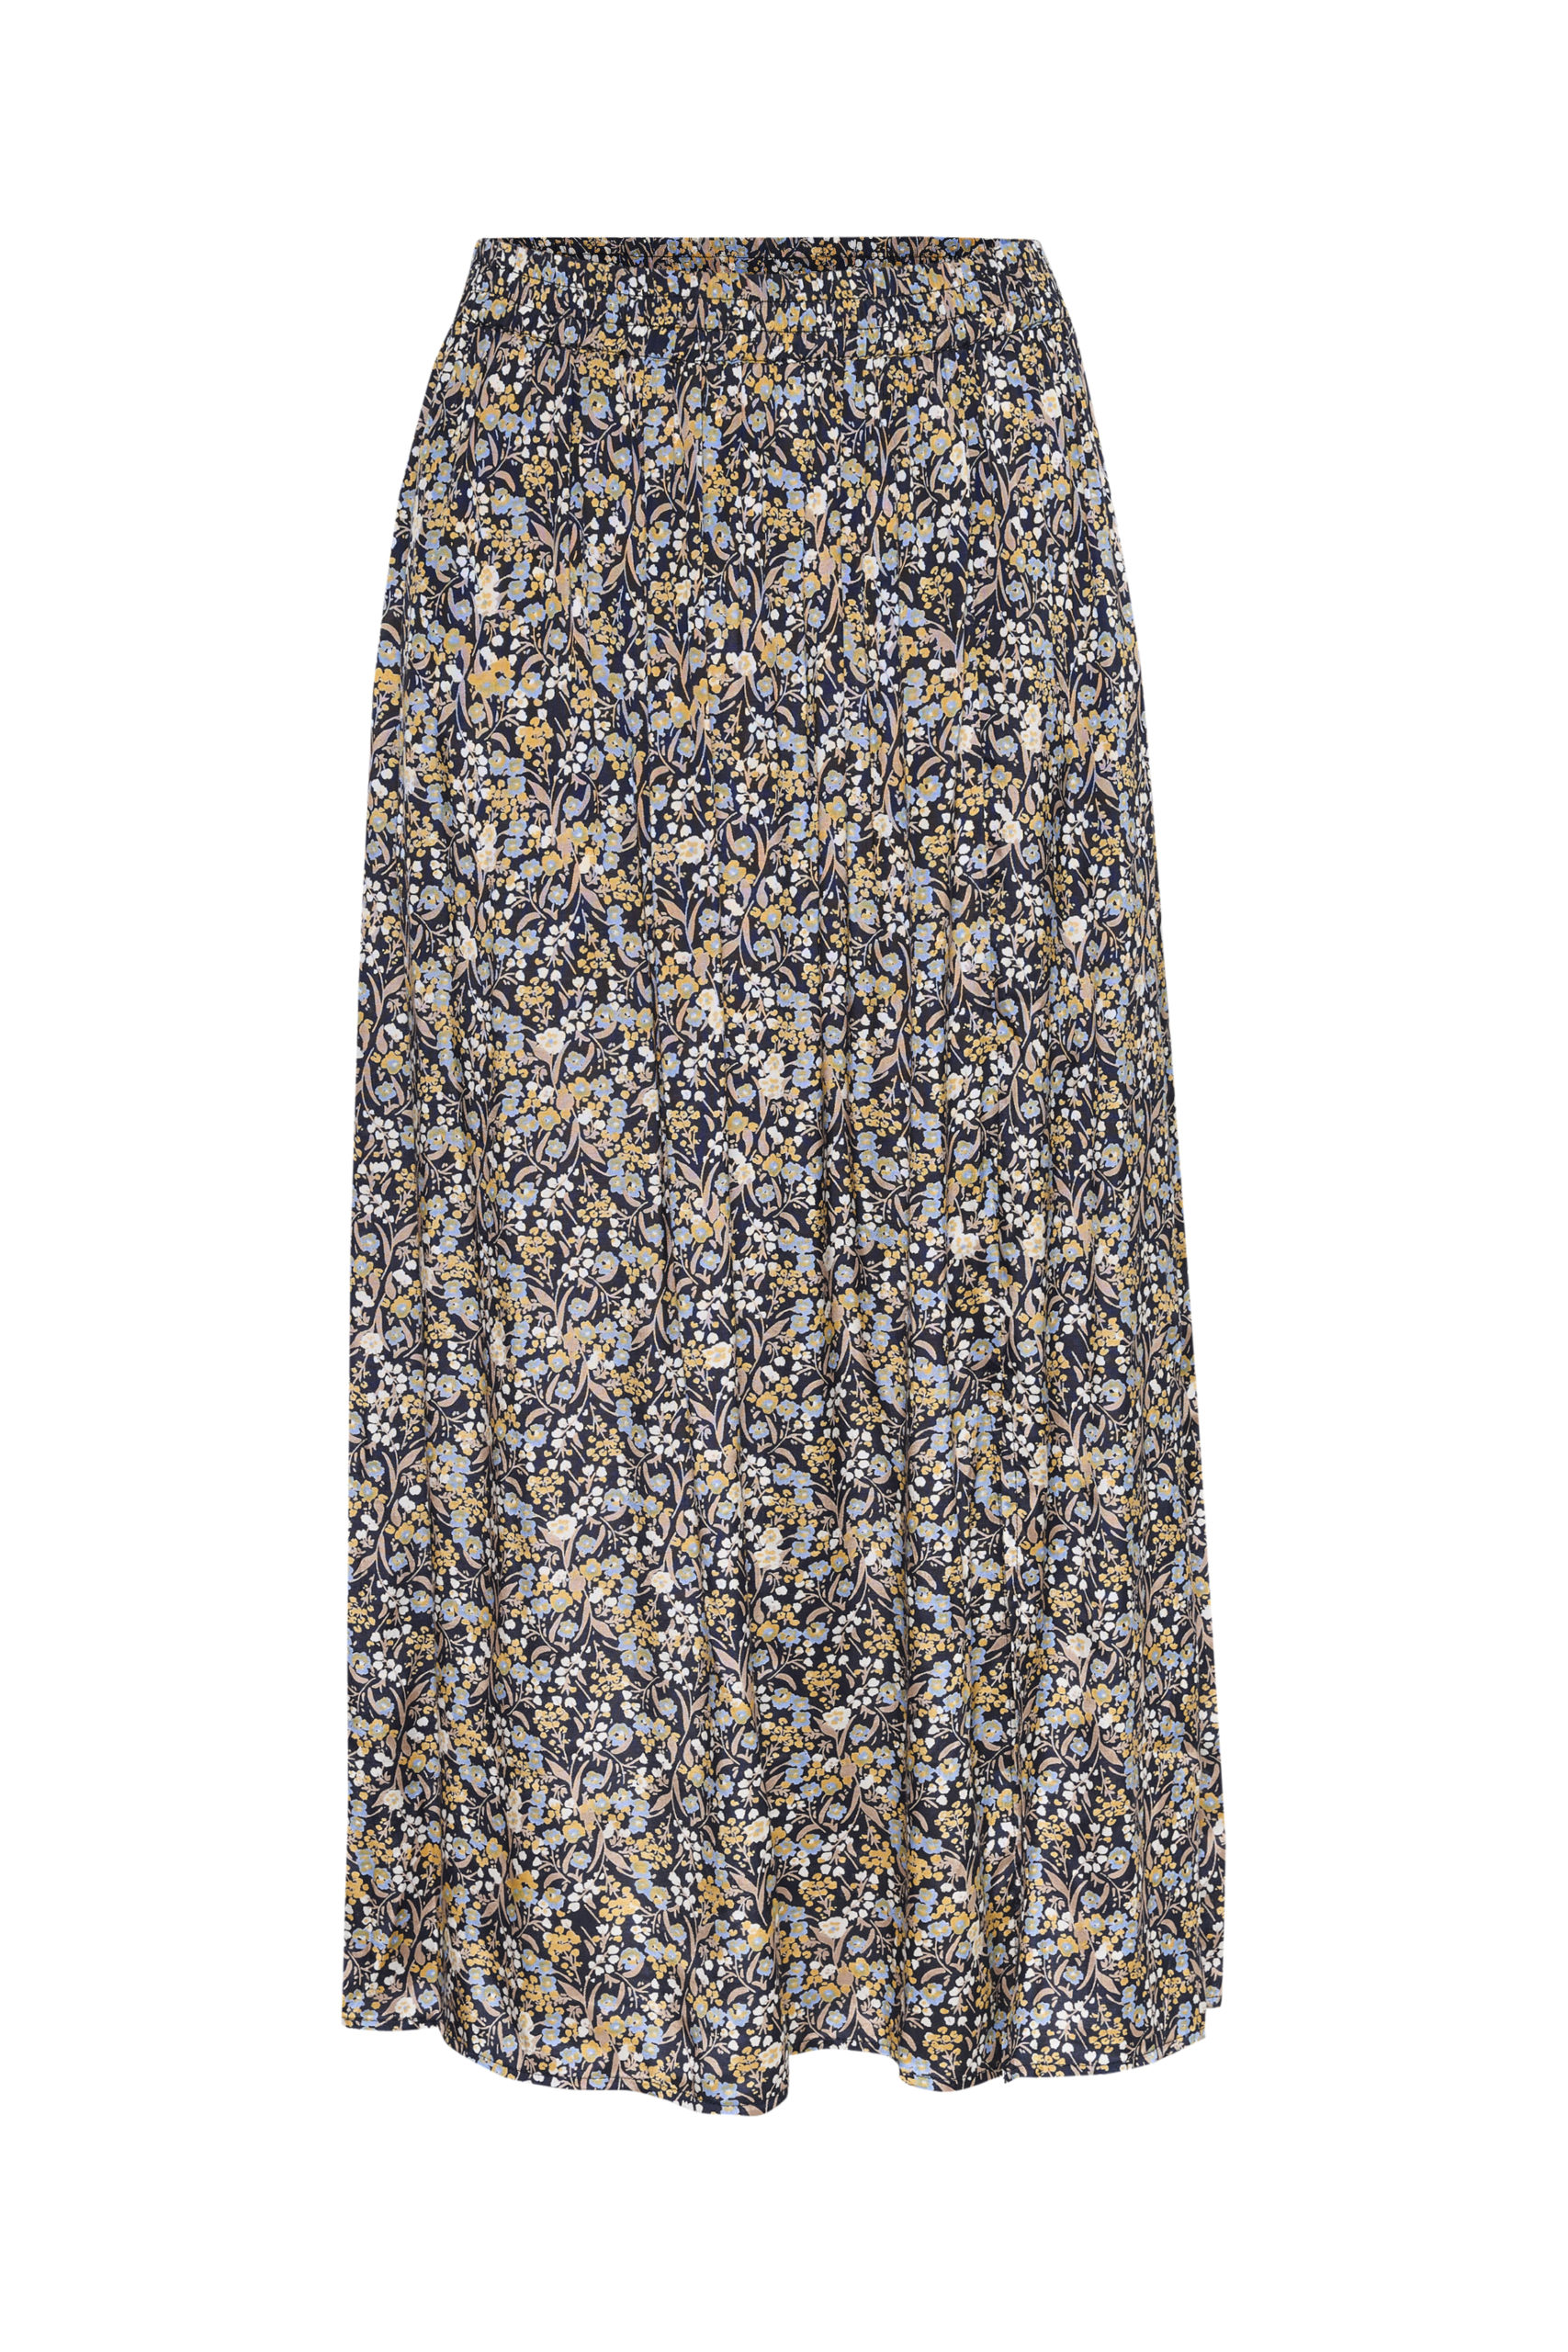 KAgrena Skirt item